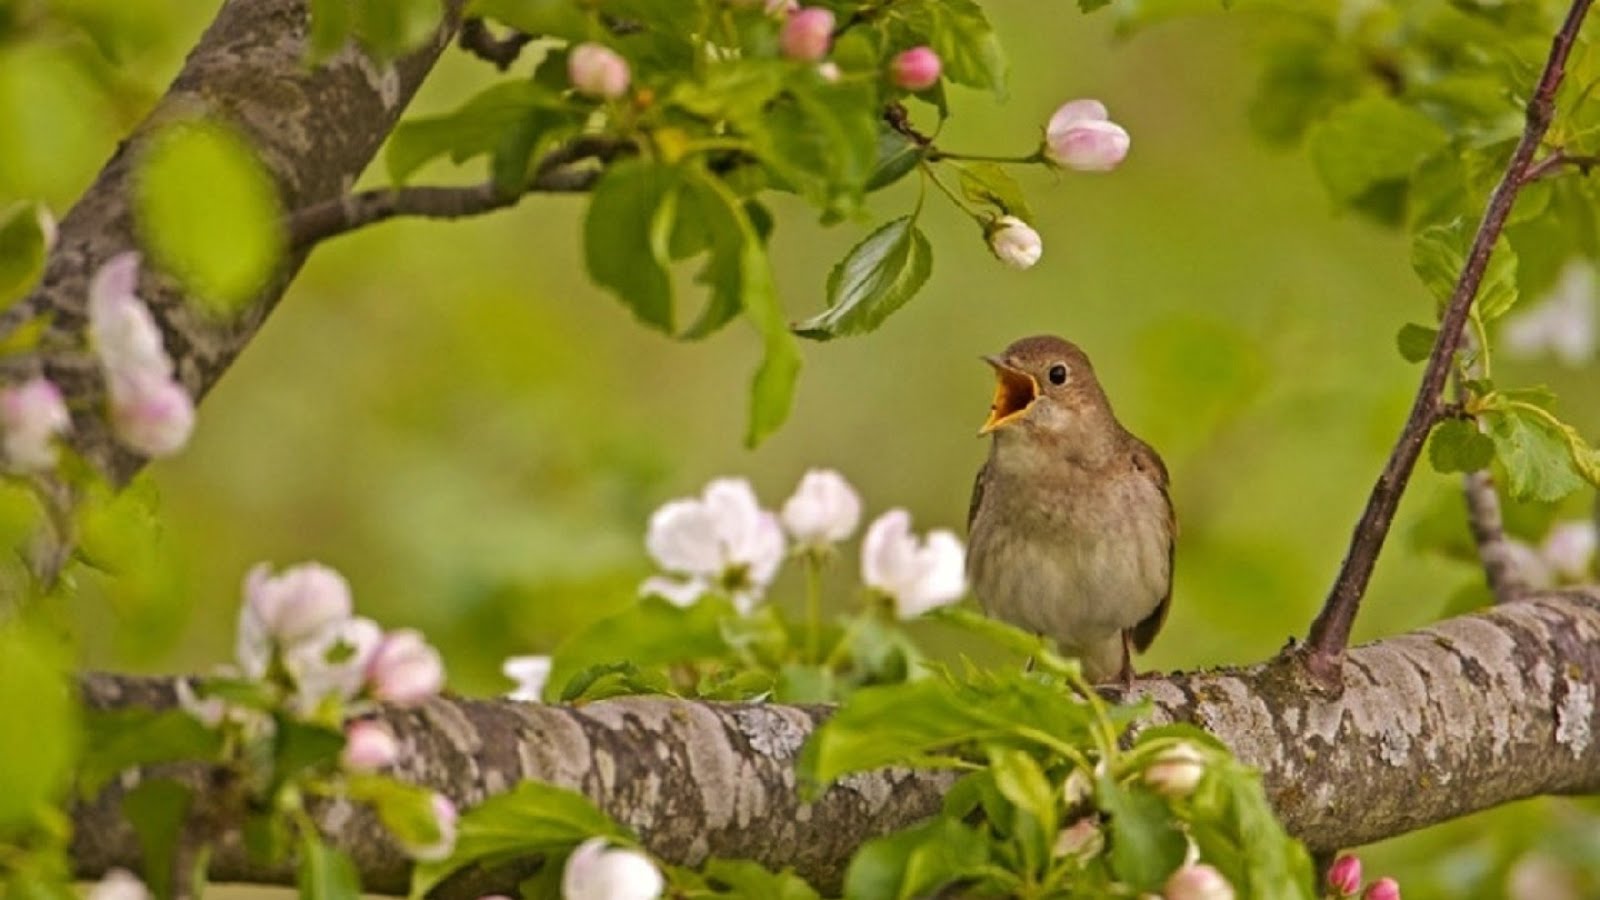 Звонкая птичья трель зазвучала в саду. Соловьиная роща Соловей. Птица в цветущем саду. Птицы в яблоневом саду.